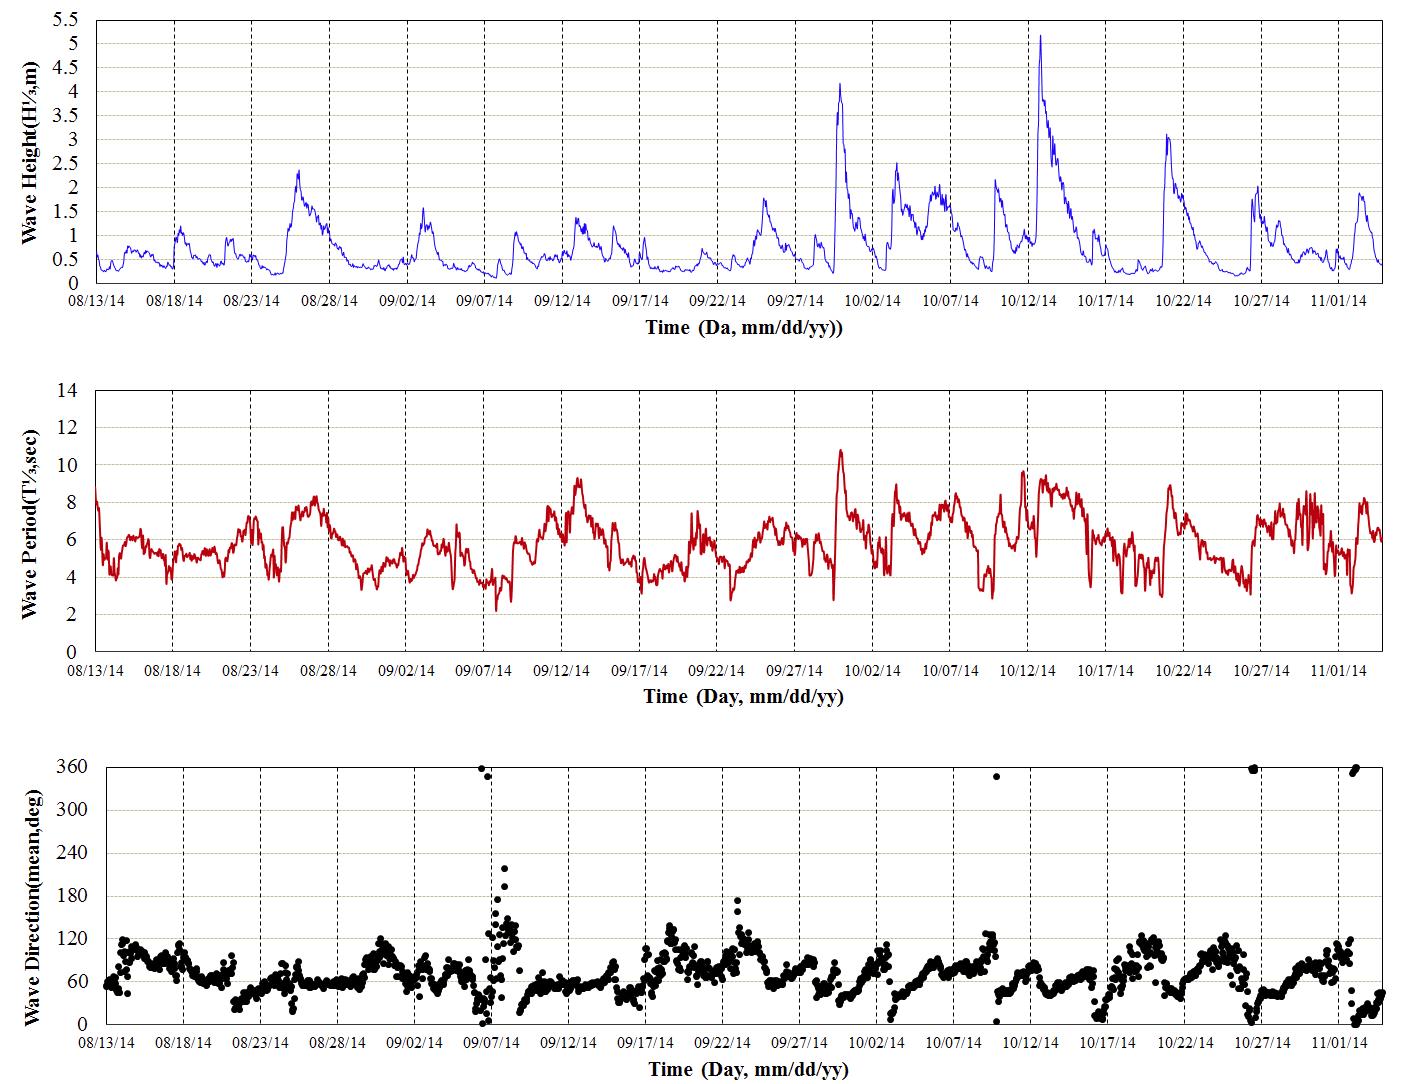 강원중부 파랑 관측결과(2014년 8월 13일∼2014년 11월 04일)